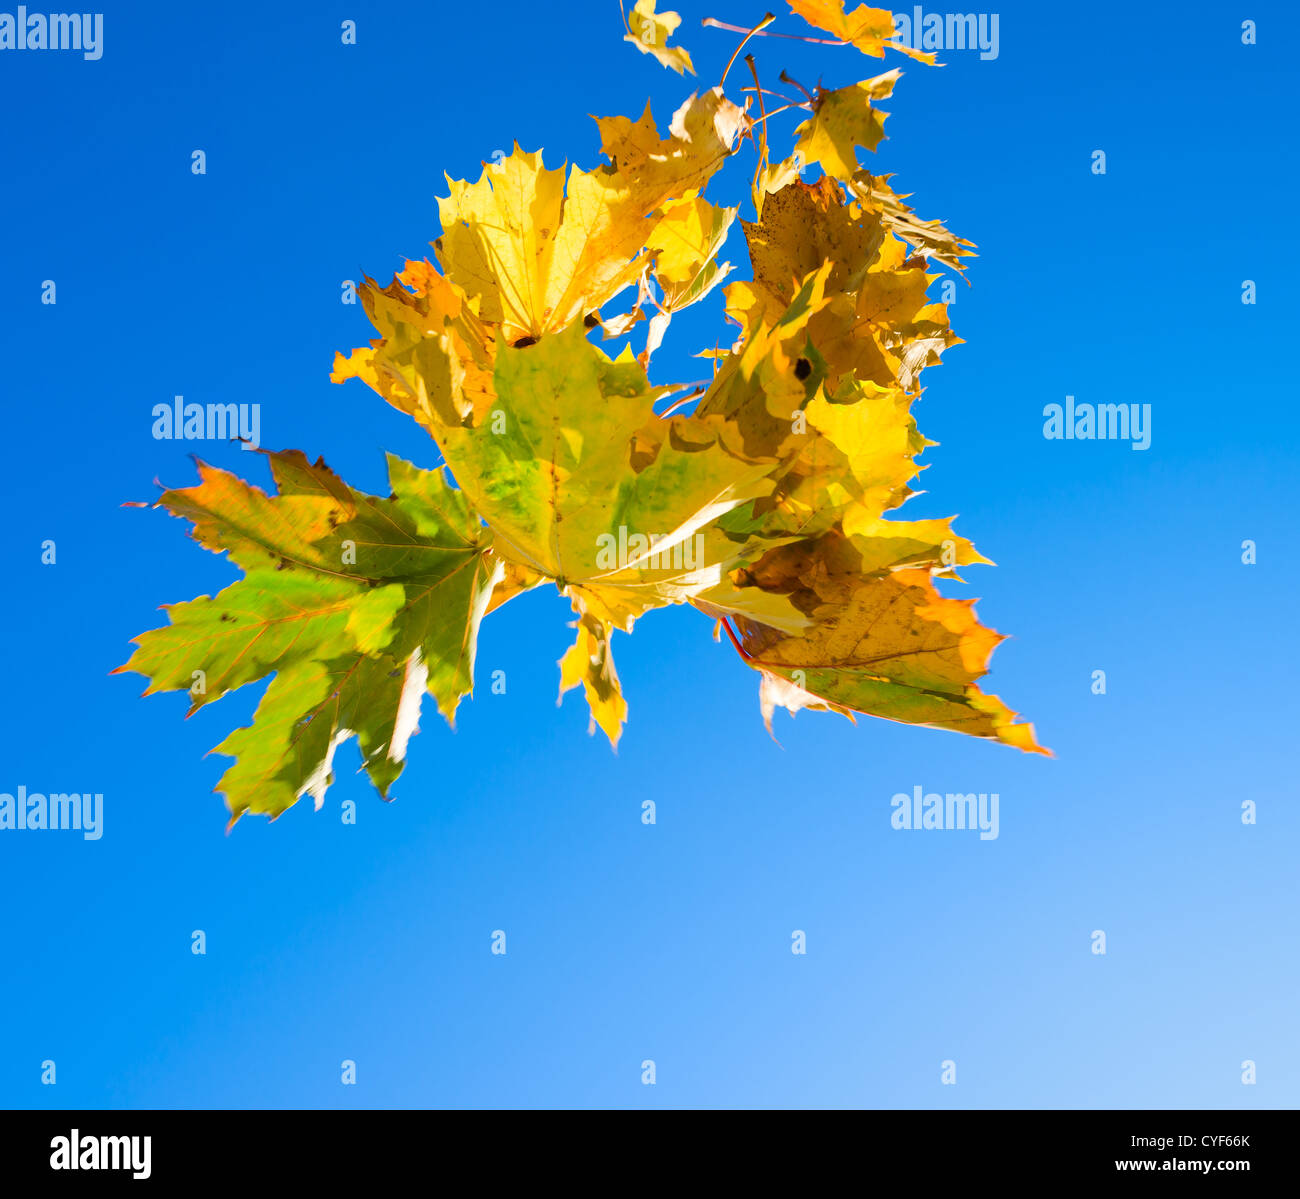 Ahornblätter herunterfallen, blauen Himmel im Hintergrund. Stockfoto